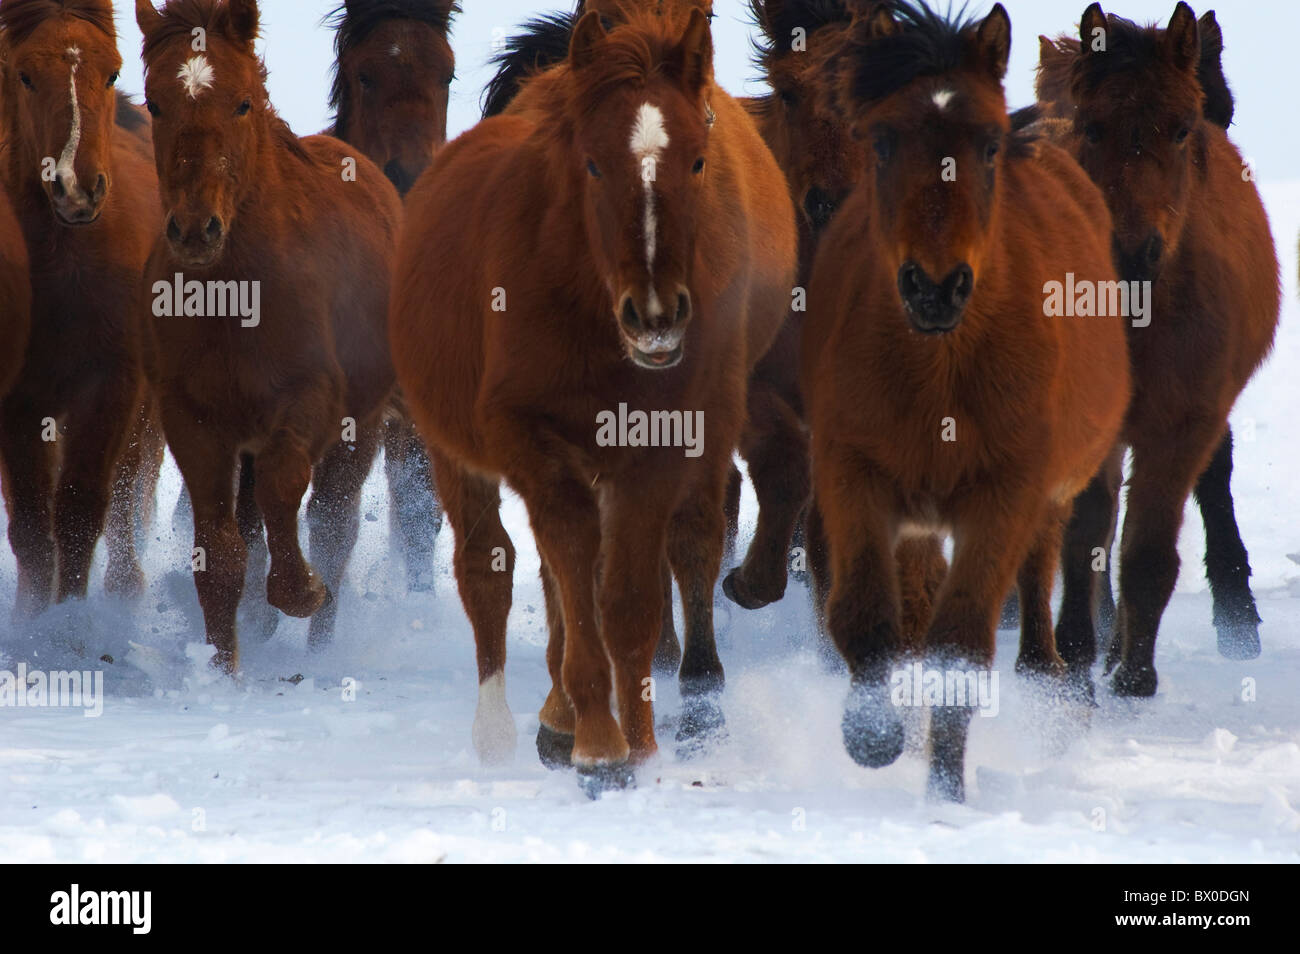 Les chevaux de Mongolie avant chargement, Prairie Hulun Buir, Manzhouli, Hulunbuir, région autonome de Mongolie intérieure, Chine Banque D'Images